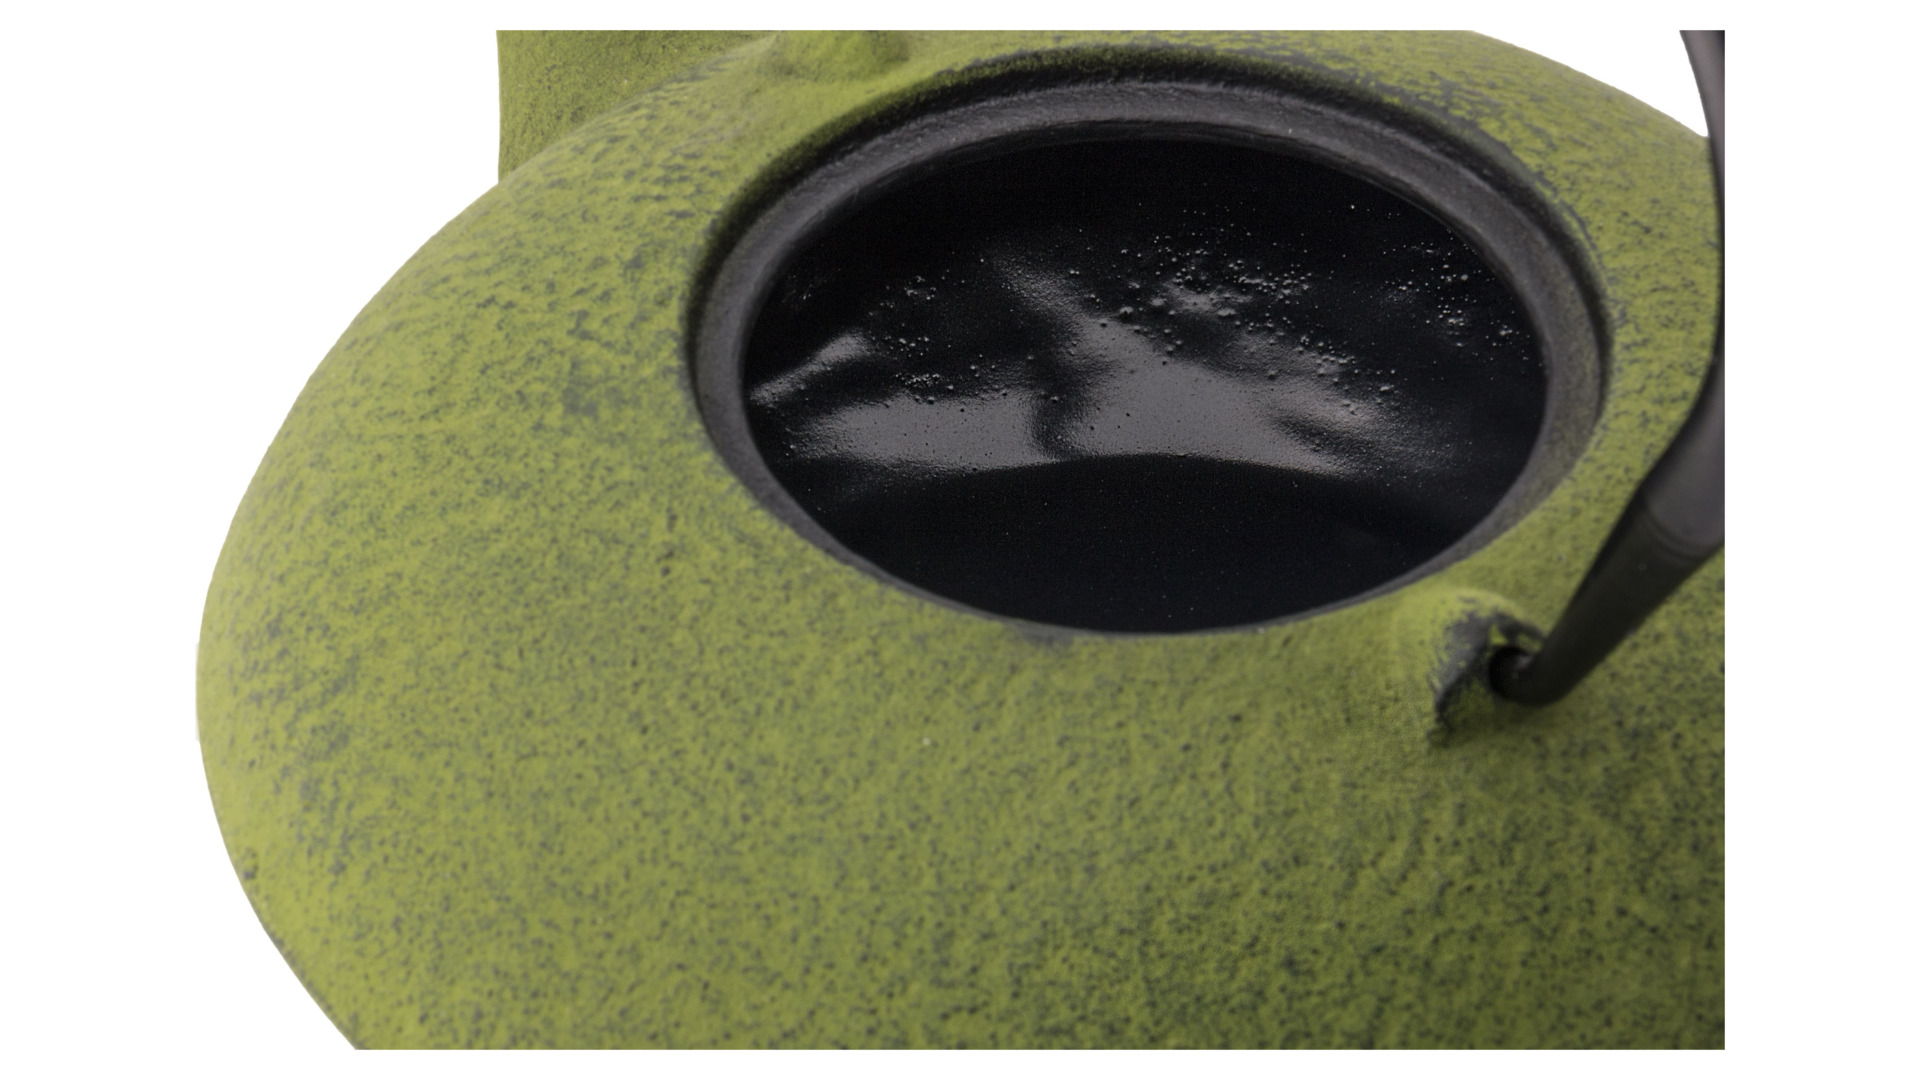 Чайник заварочный Bredemeijer Yantai 1,2 л, с фильтром, чугун, с фарфоровой крышкой, зеленый